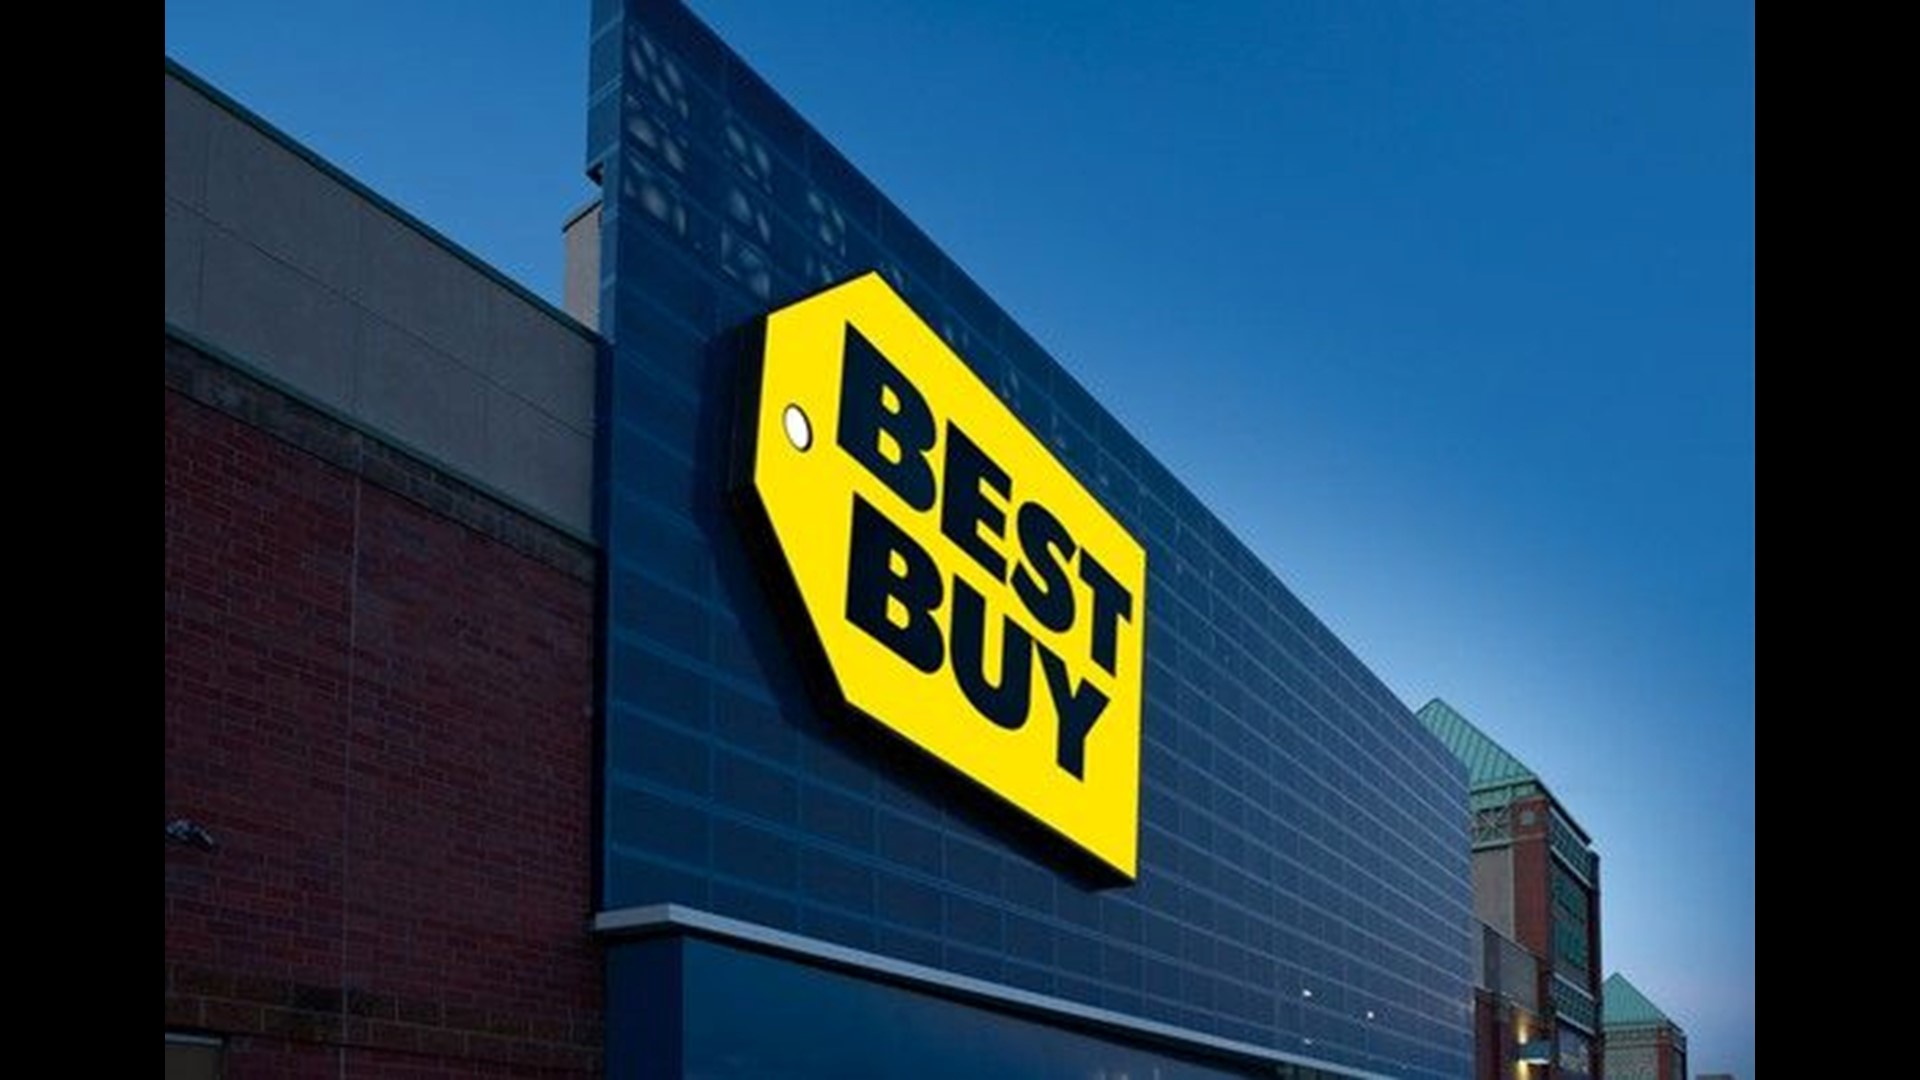 Best Buy's '20 Days of Doorbusters' promises exciting deals in December